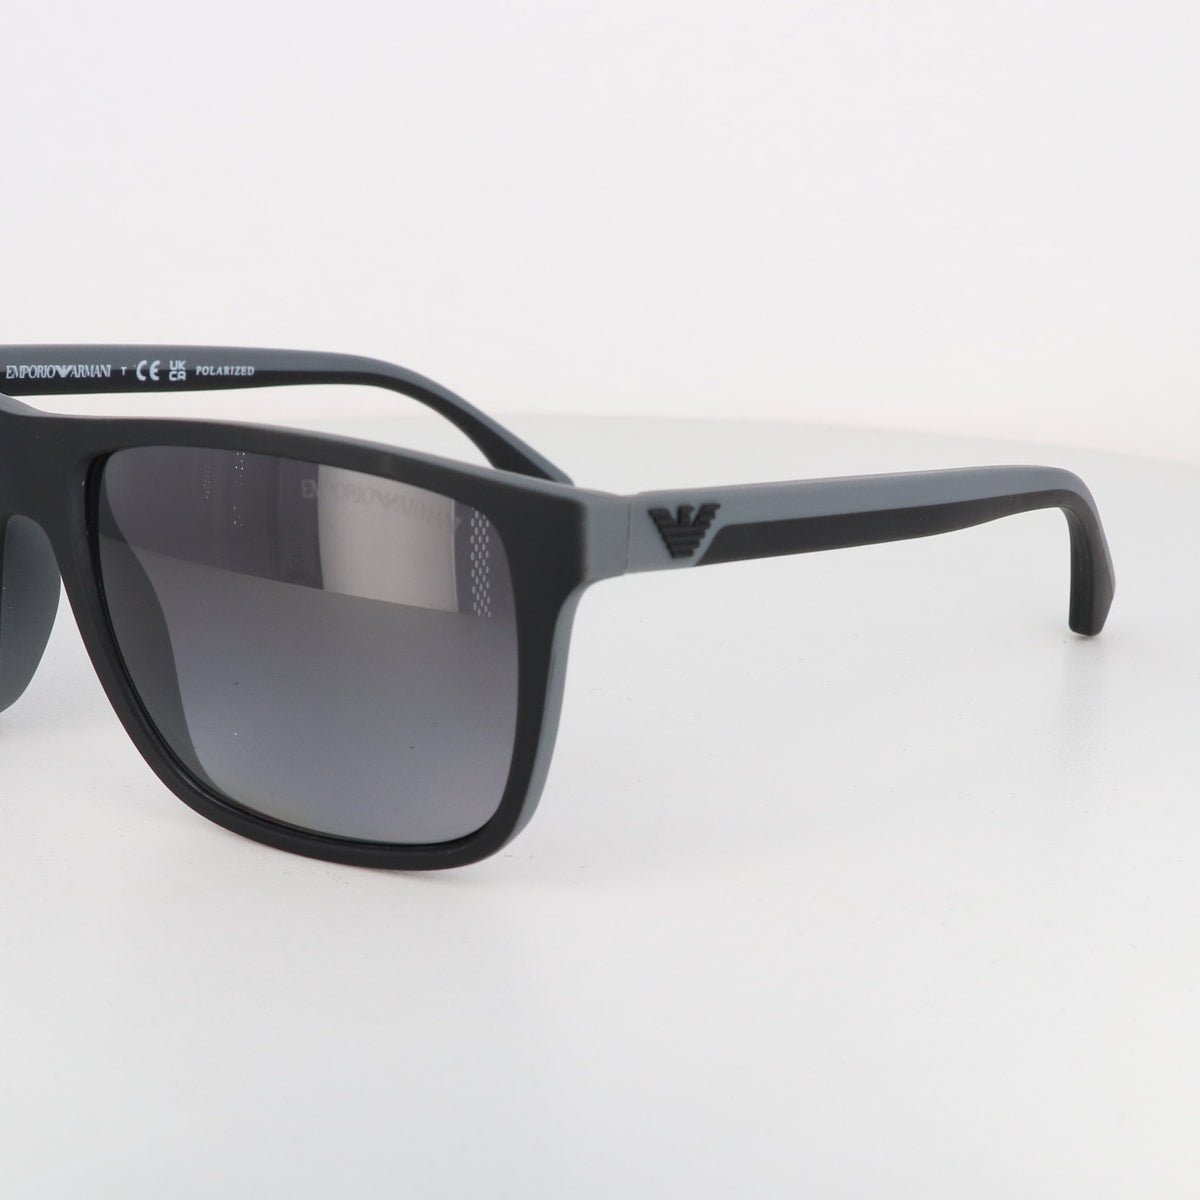 Emporio Armani Ea 4033 men Sunglasses online sale